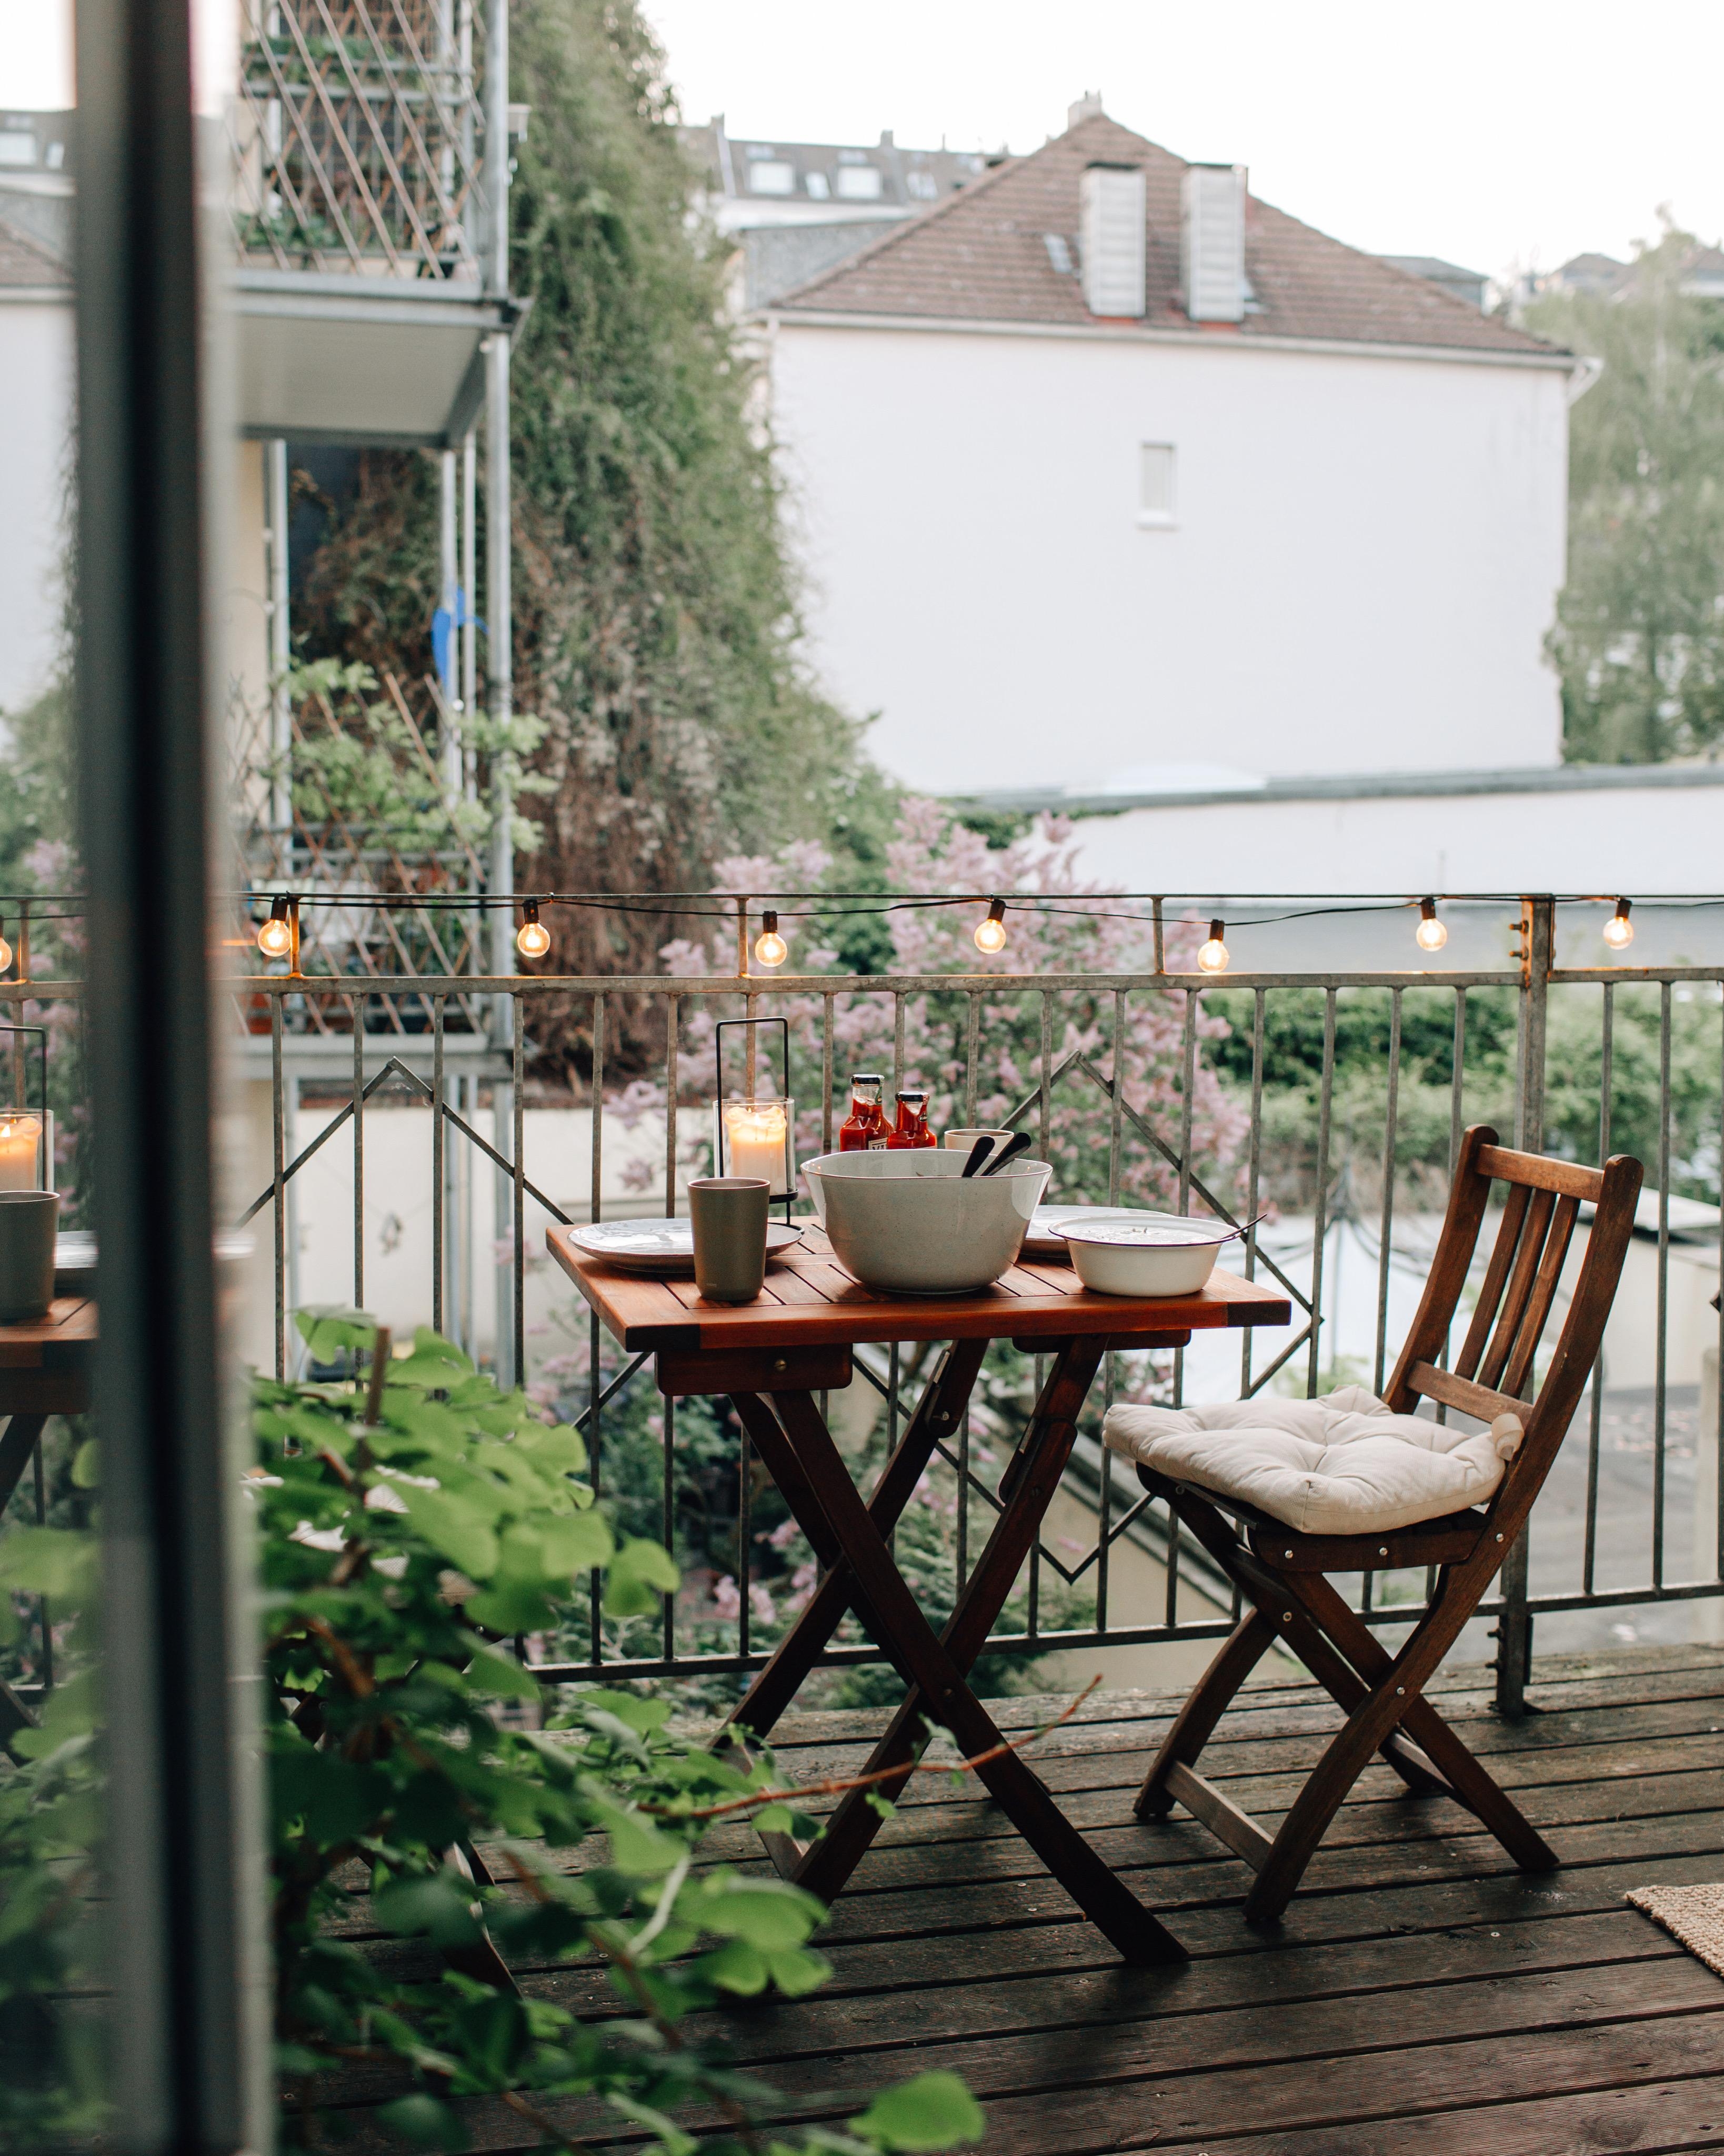 Warme Sommerabende, essen auf dem Balkon und dann mit dem Cocktail durchs Viertel schlendern.
Sommerkind ☀️ 
#balkon